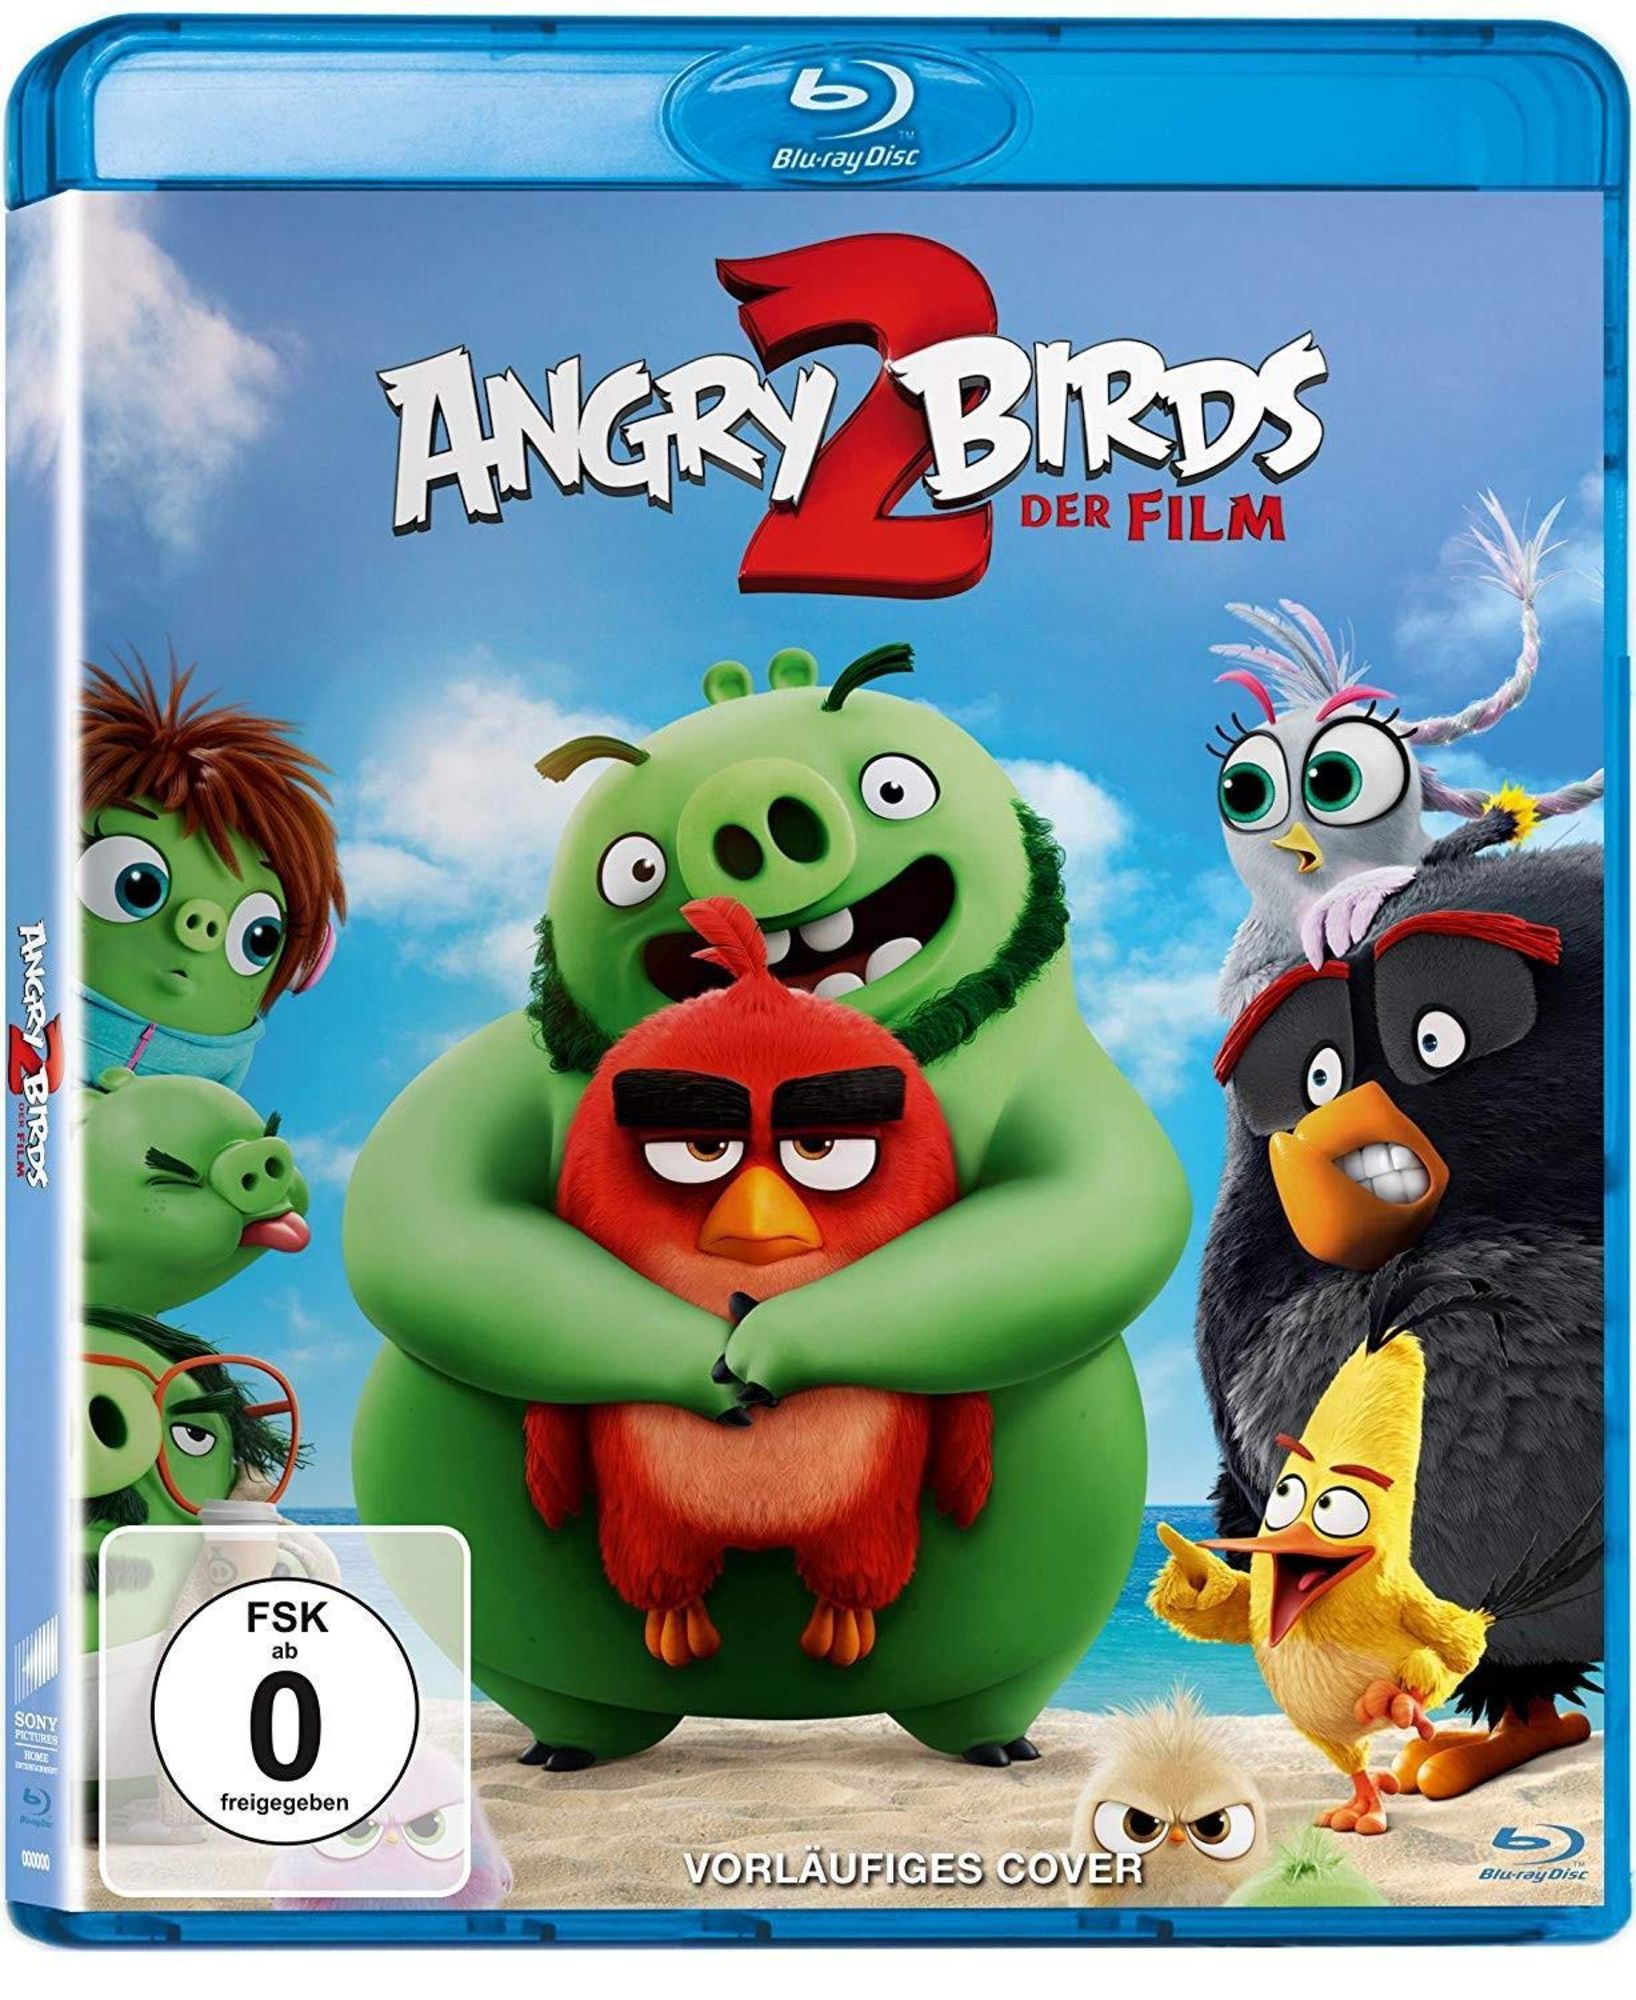 Angry Birds 2 - Der Film' von 'Thurop Van Orman' - 'Blu-ray